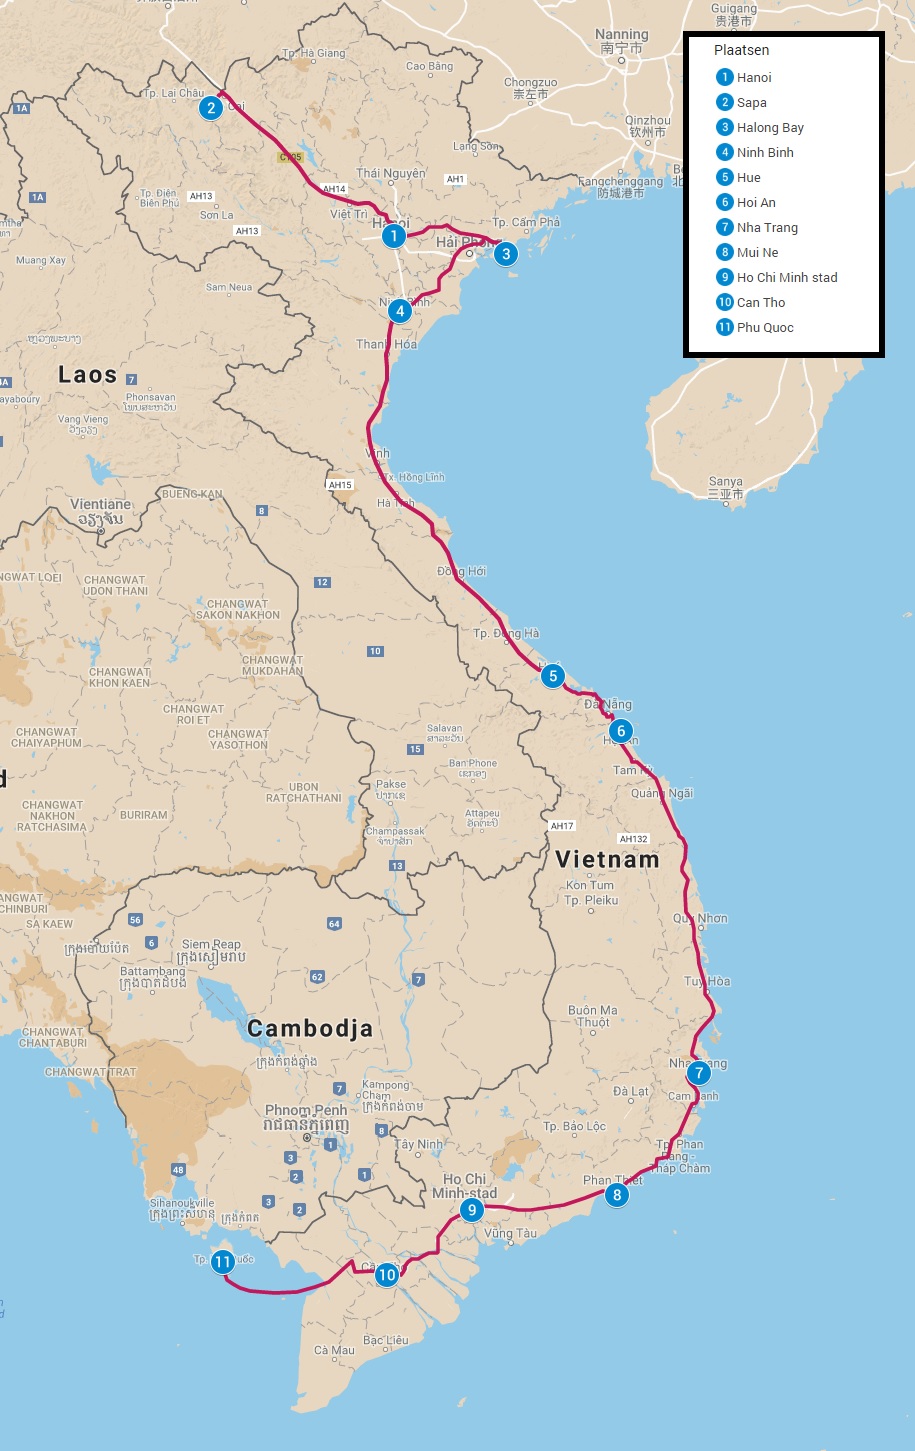 Reisroute door Vietnam drie weken